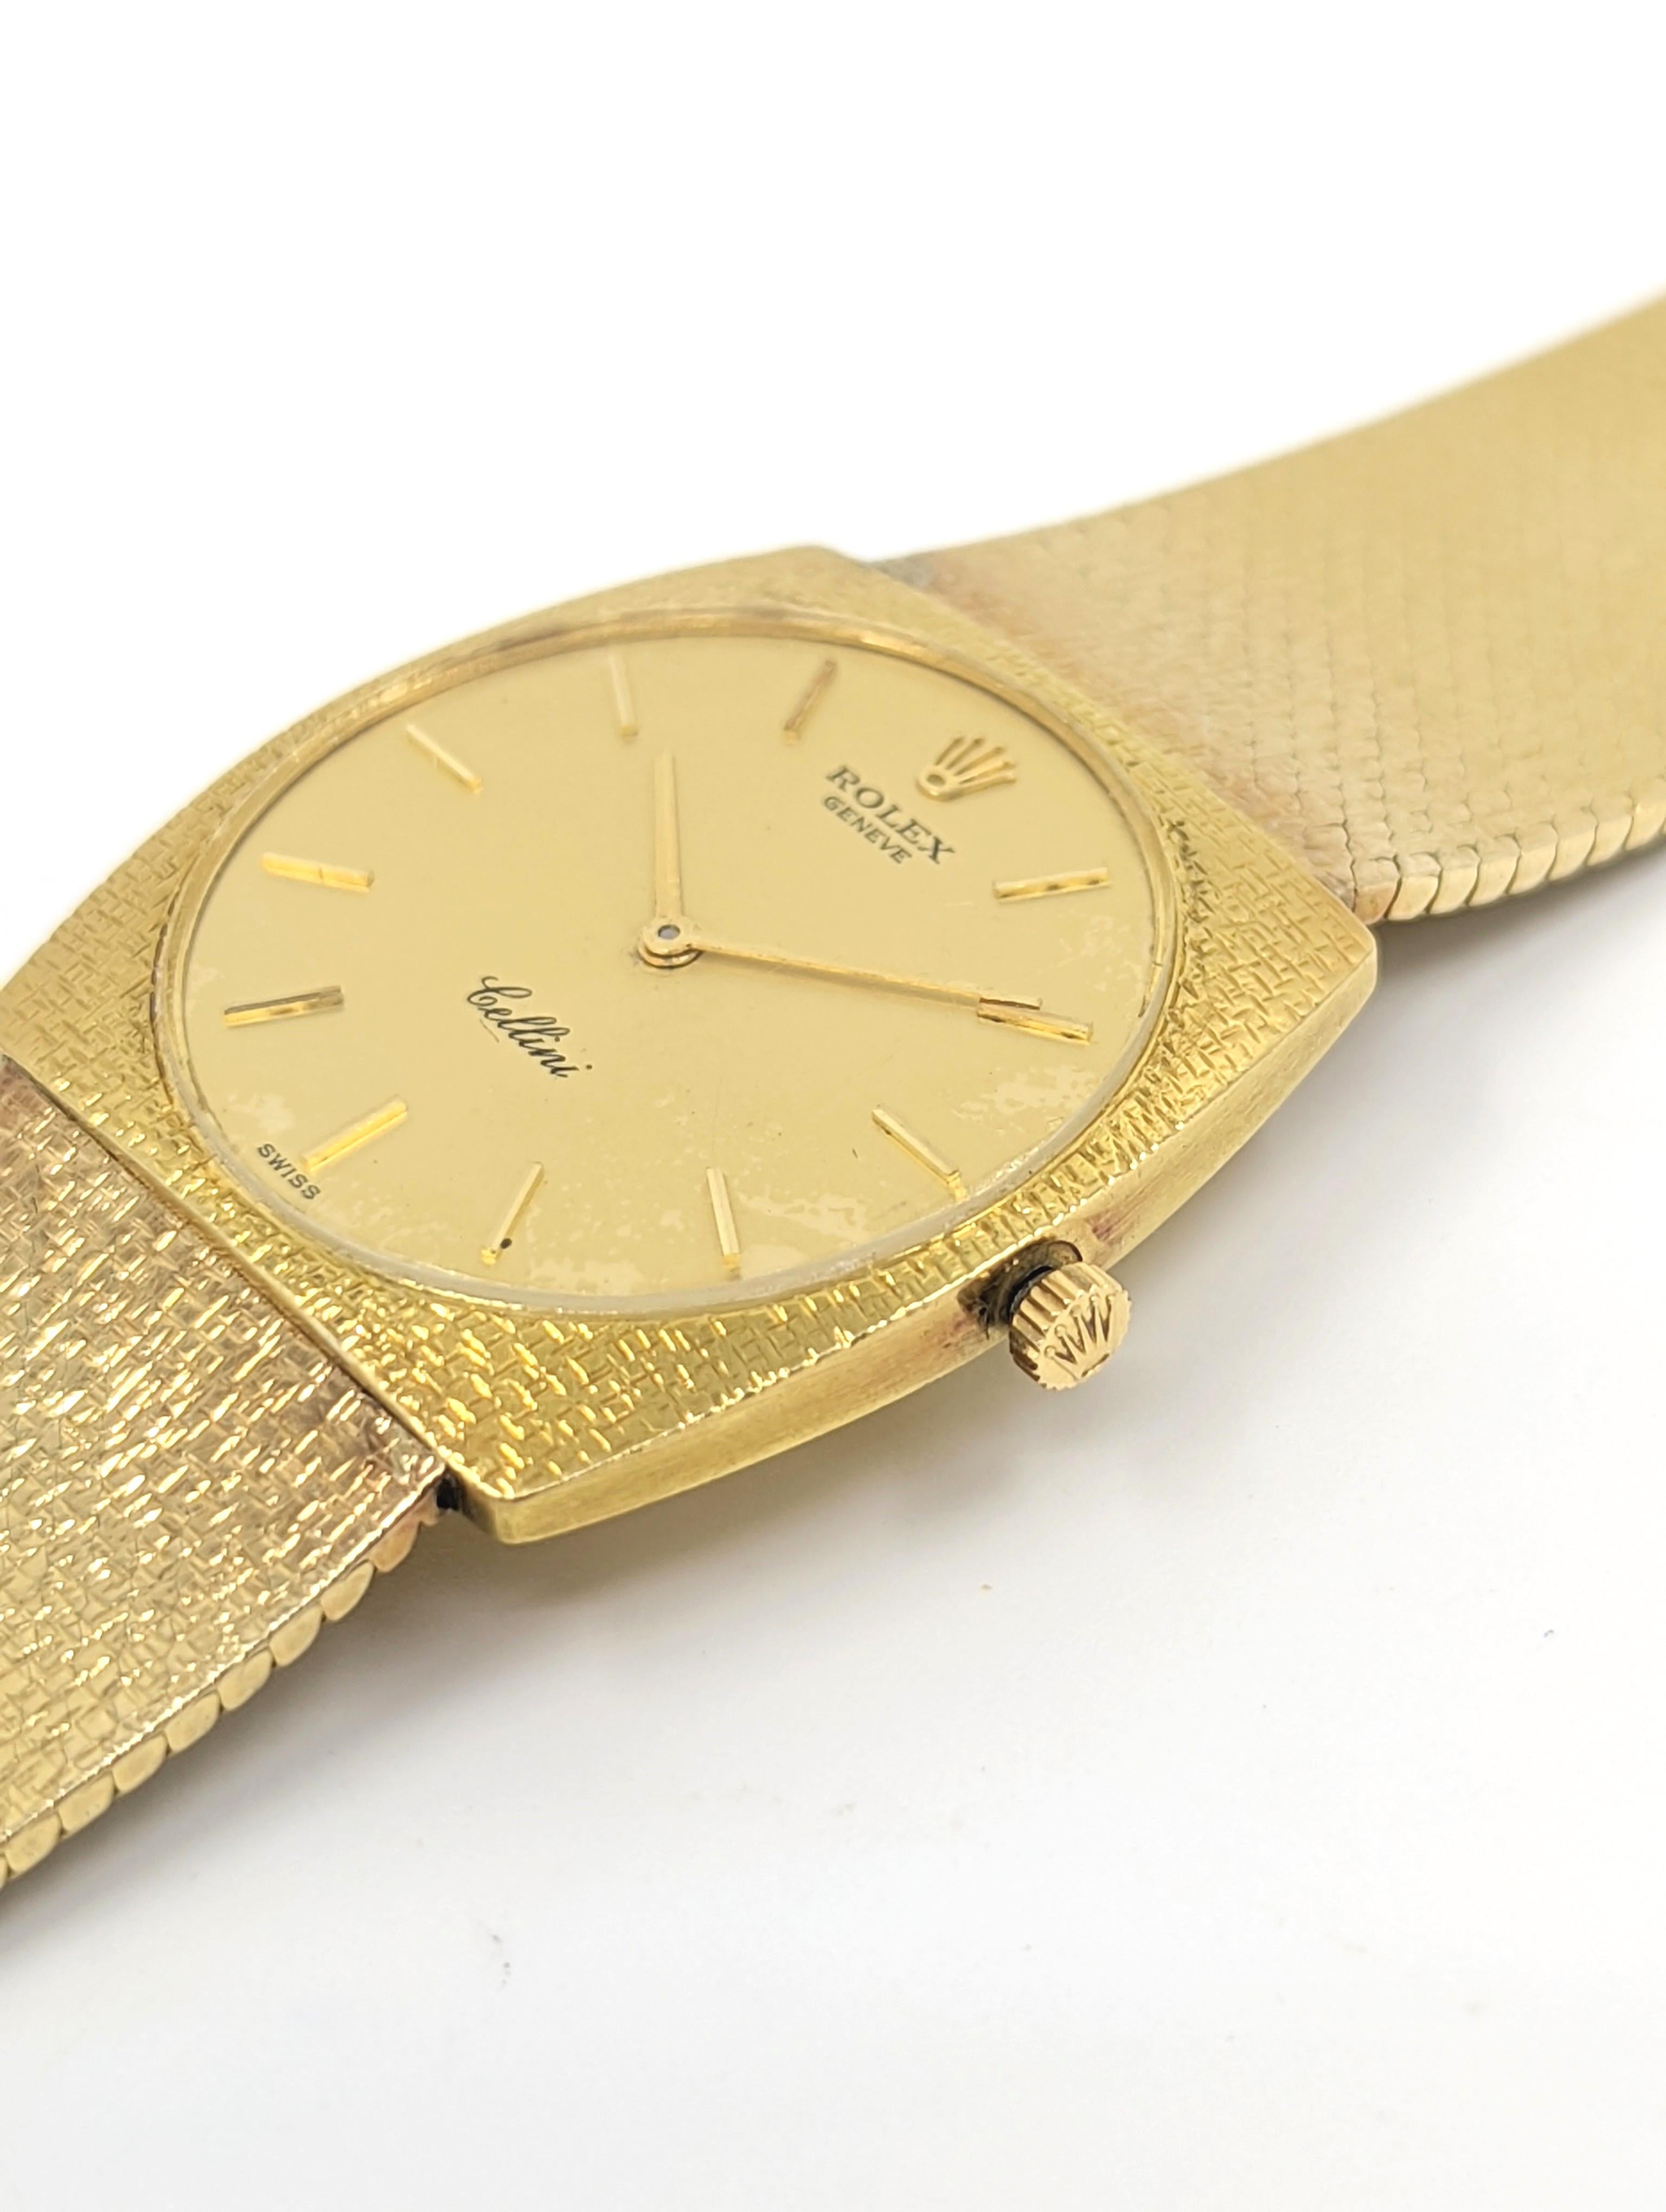 Eine seltene und elegante Vintage Rolex Cellini Armbanduhr in massivem 18 Karat Gelbgold mit einem massiven 18 Karat Gelbgold Mesh-Armband befestigt. Das Zifferblatt ist aus Gold und mit Stabindexen aus 18 Karat Gelbgold besetzt. Das in der Schweiz